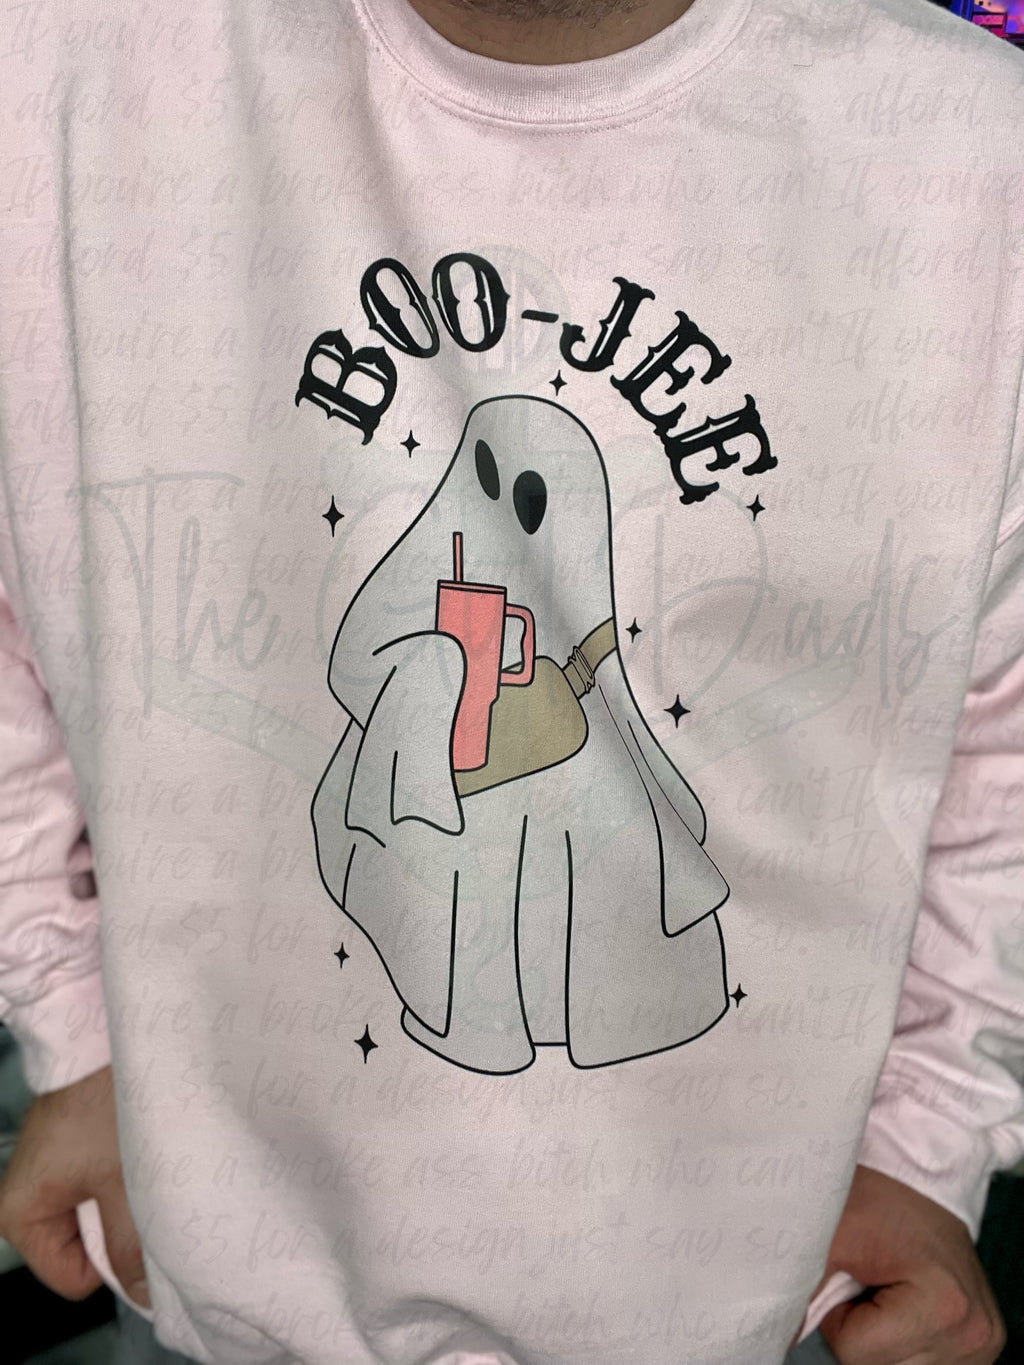 Boo-Jee Ghost Top Design